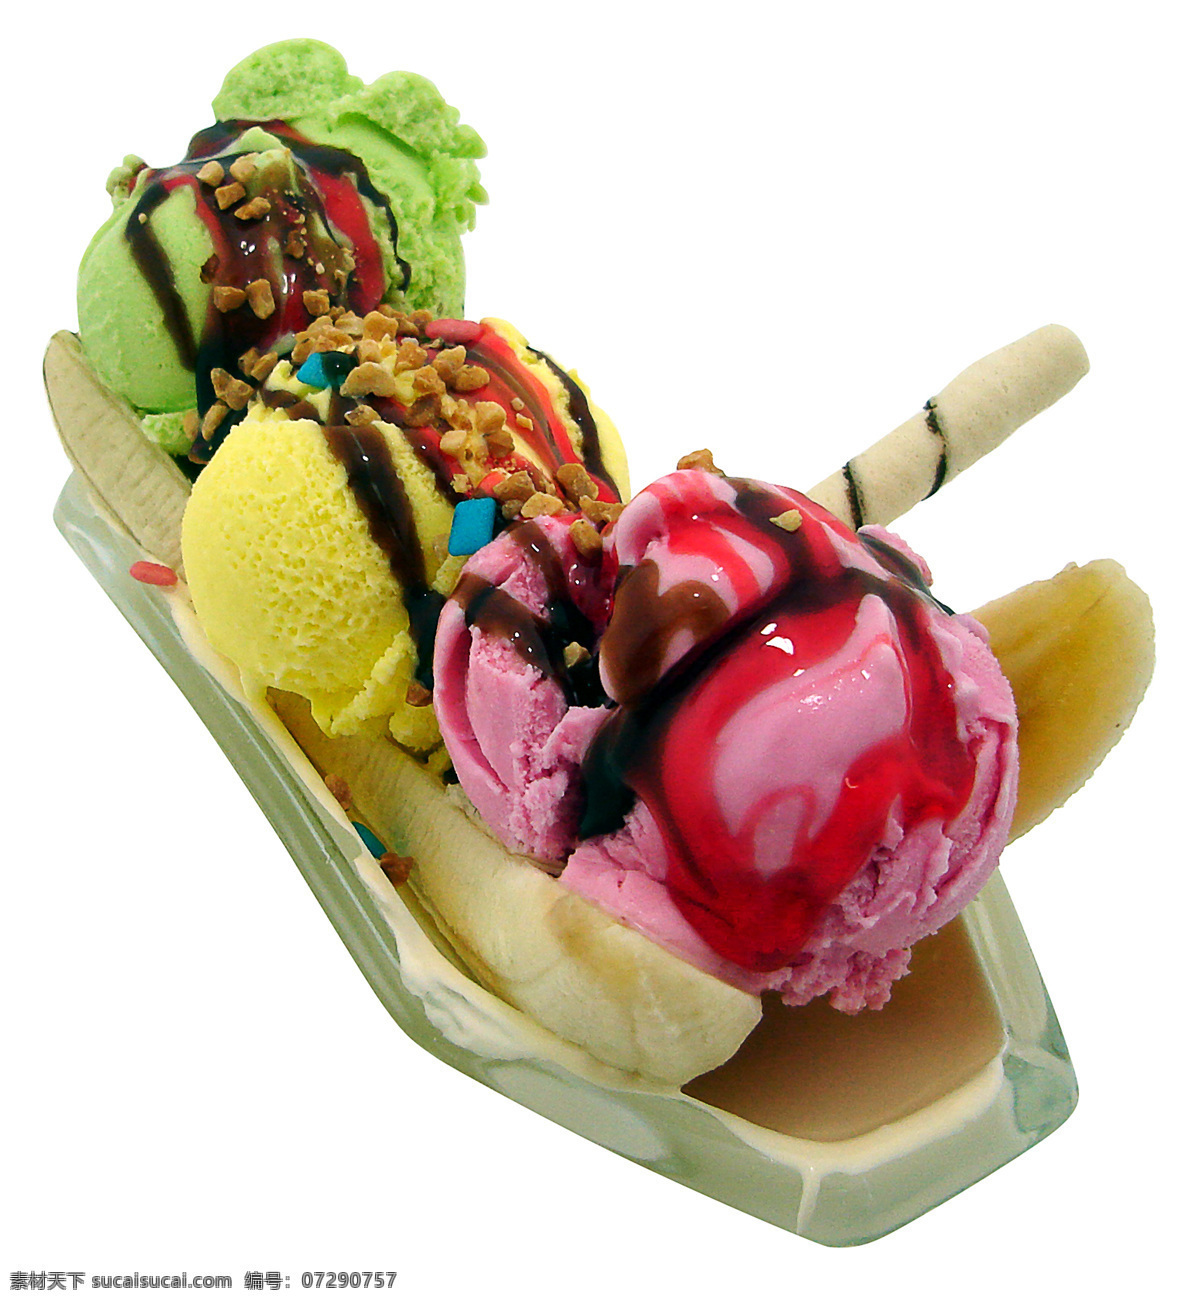 水果 冰淇淋 巧克力冰淇淋 水果冰激凌 奶油 夏日食品 食品 餐饮 美食 摄影图 高清图片 酒类图片 餐饮美食